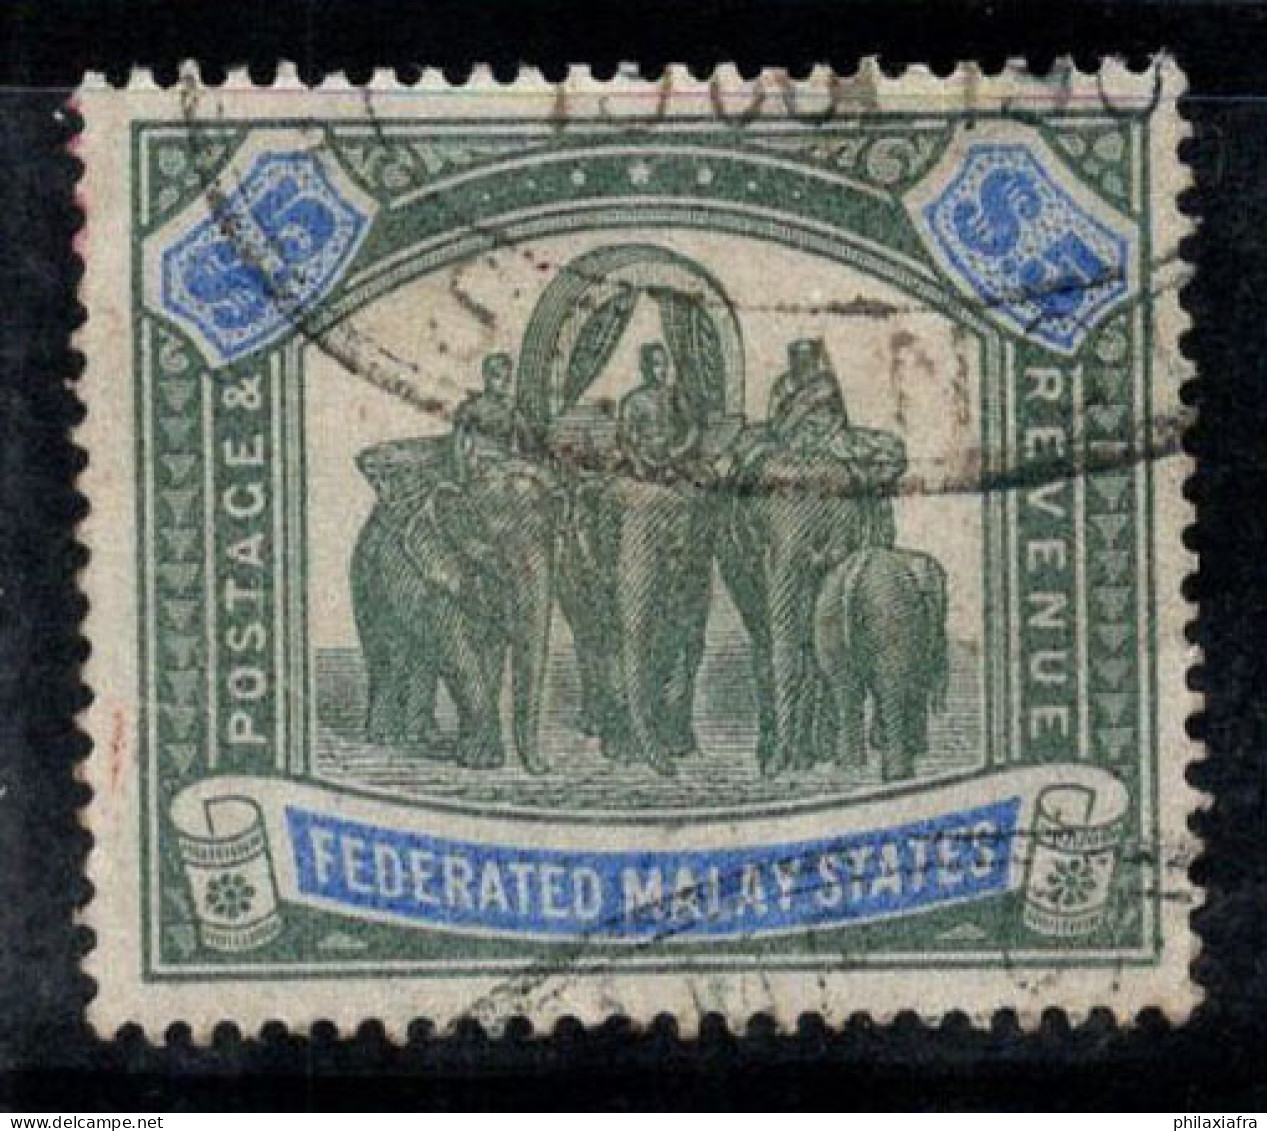 États Malais Fédérés 1900 Mi. 25 Oblitéré 100% 5 $, éléphants - Federated Malay States